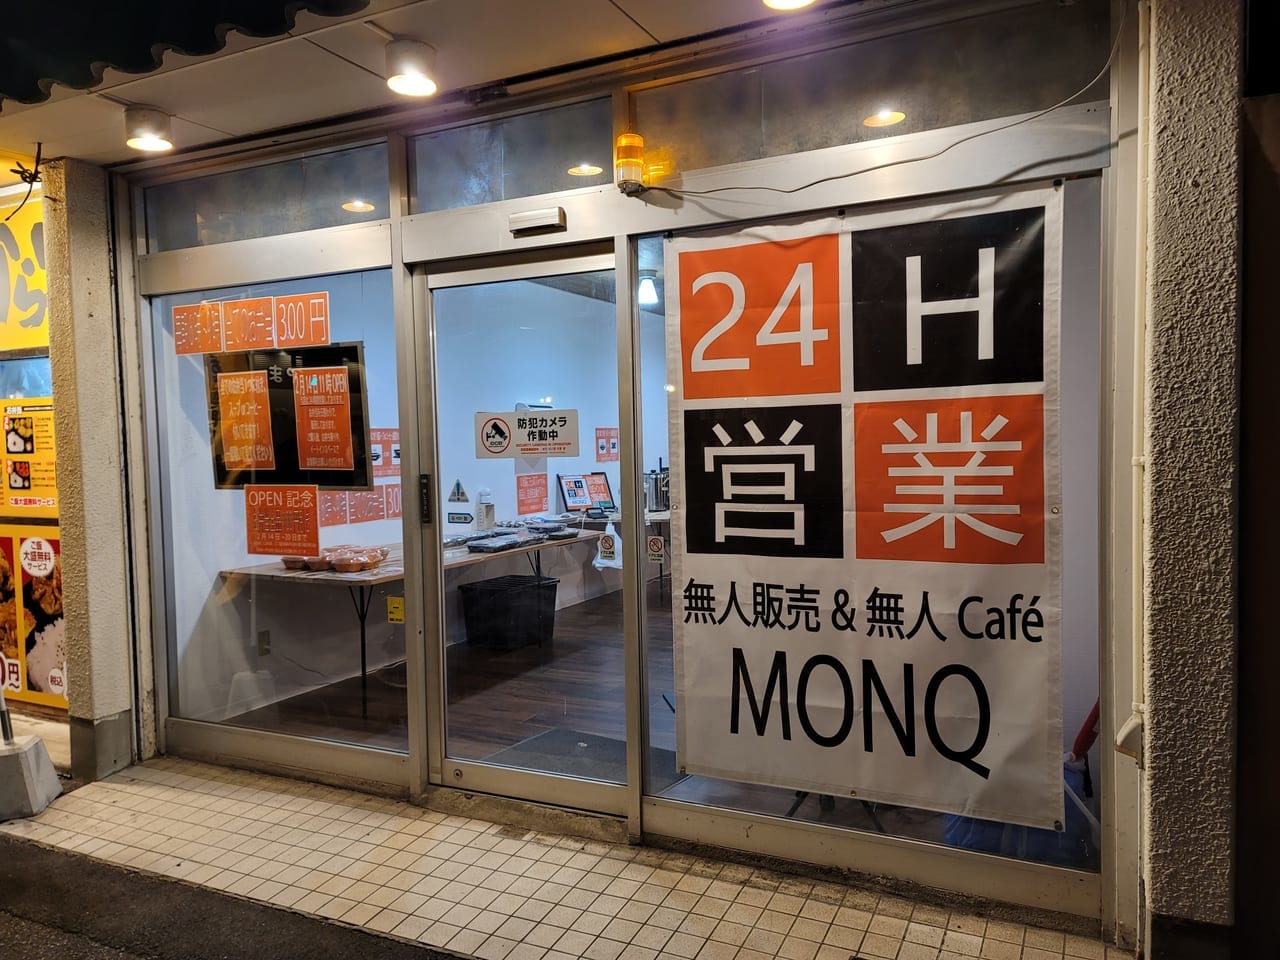 「Café MONQ」店舗外観アップ